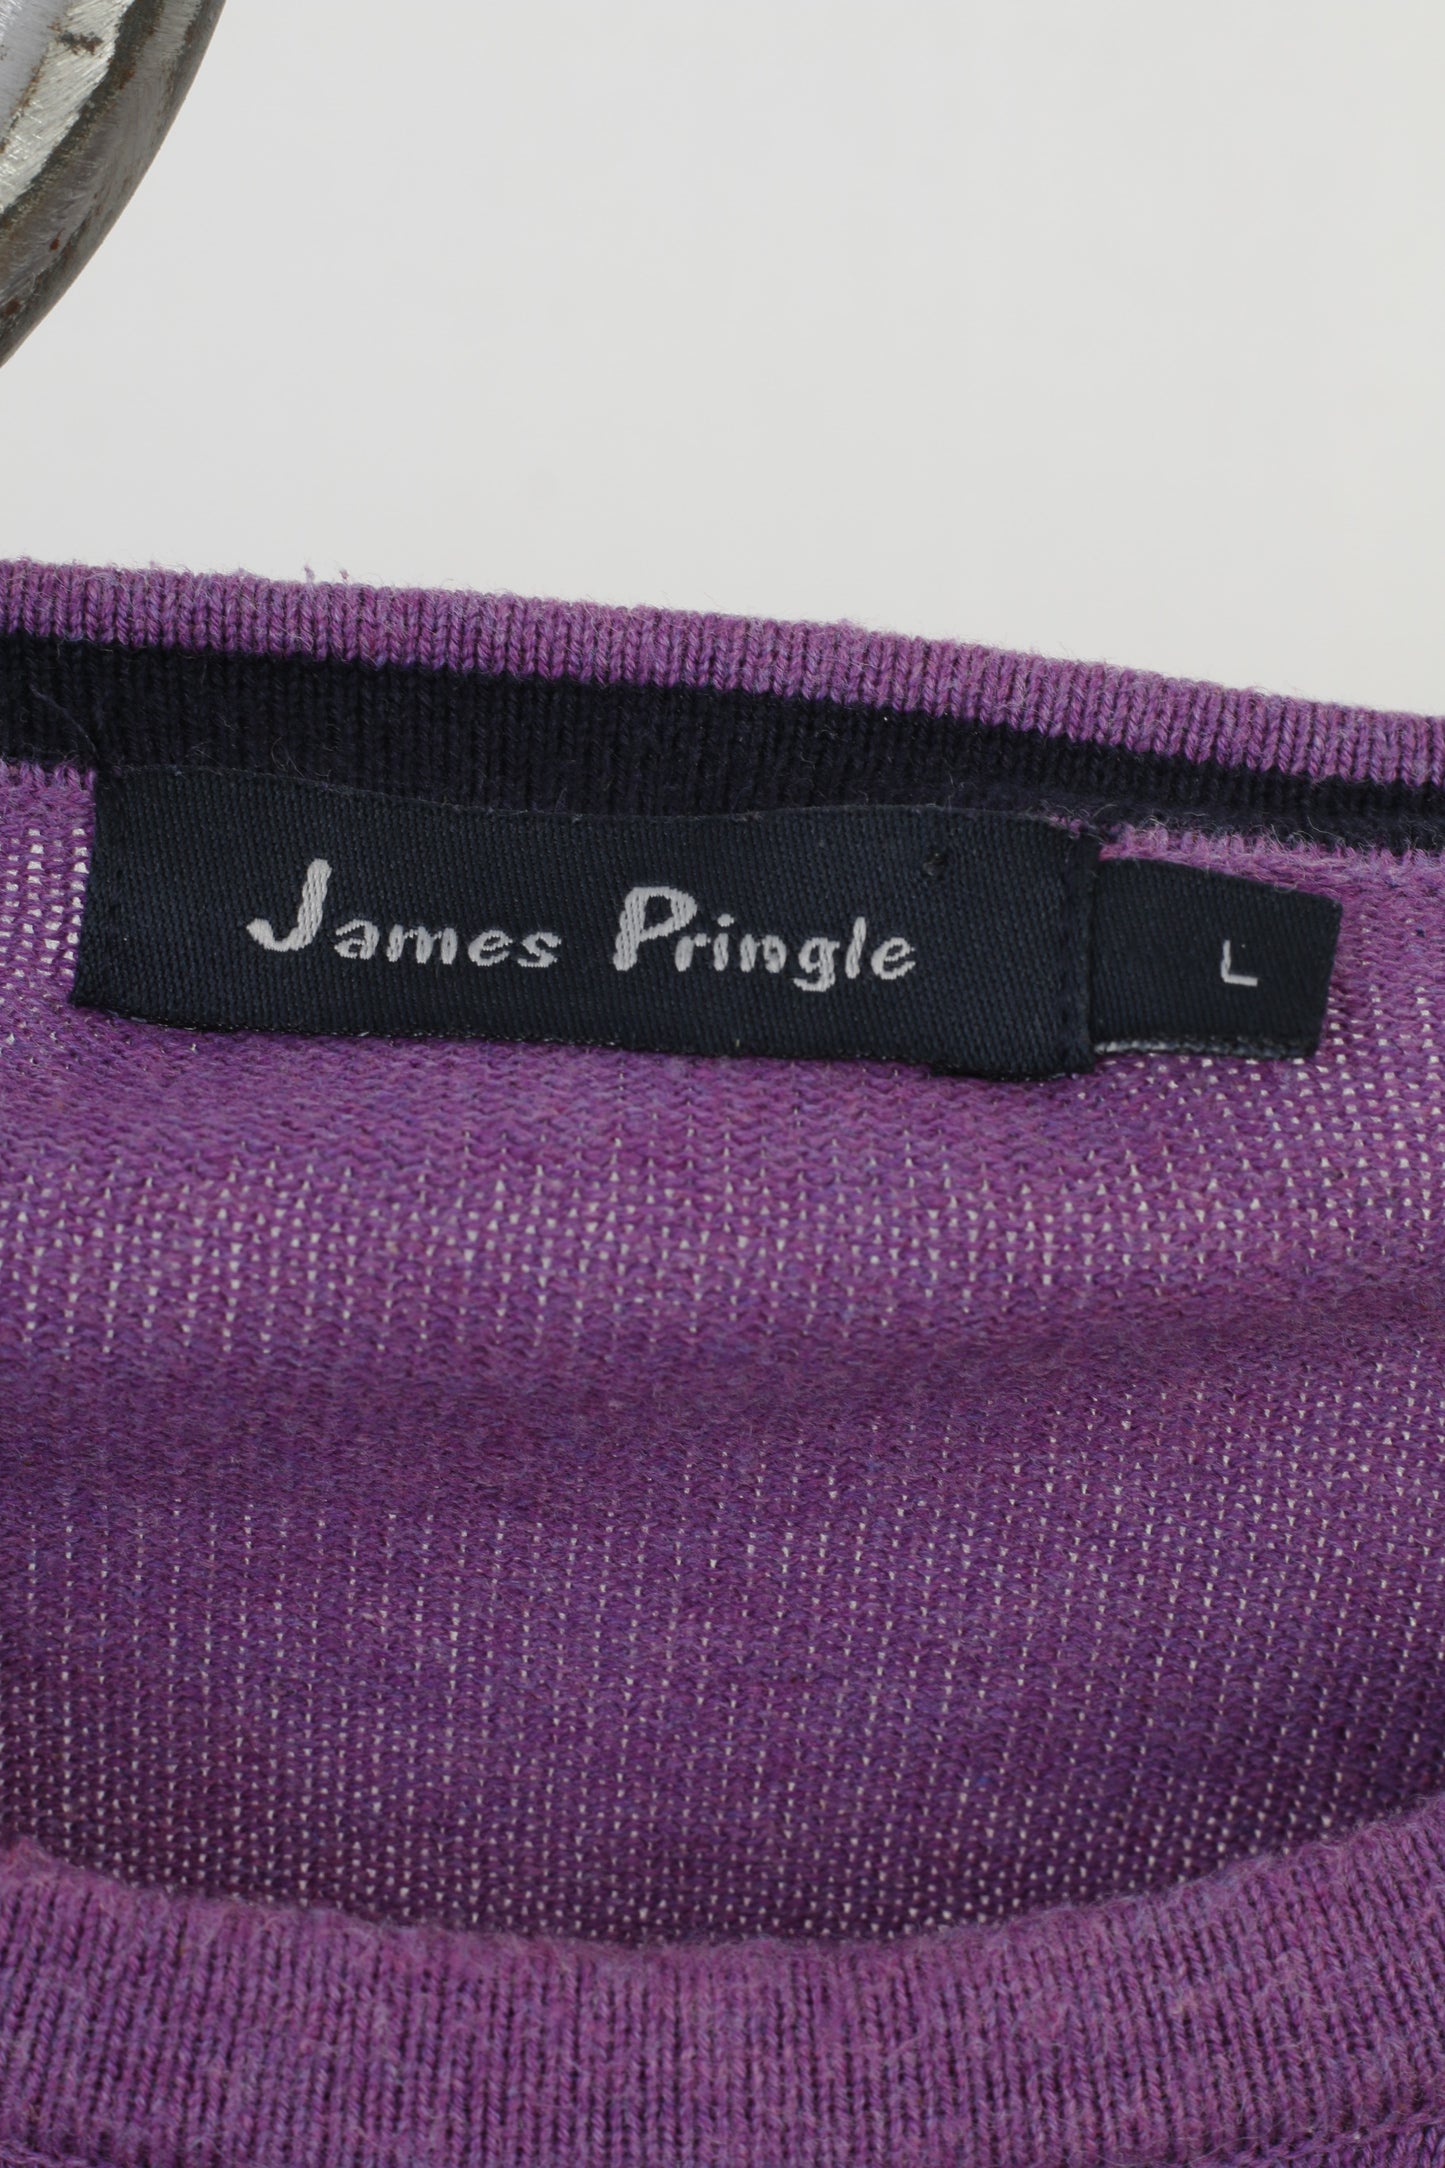 James Pringle Men L Jumper Purple Classic Cotton Crew Neck Vintage Sweater Top